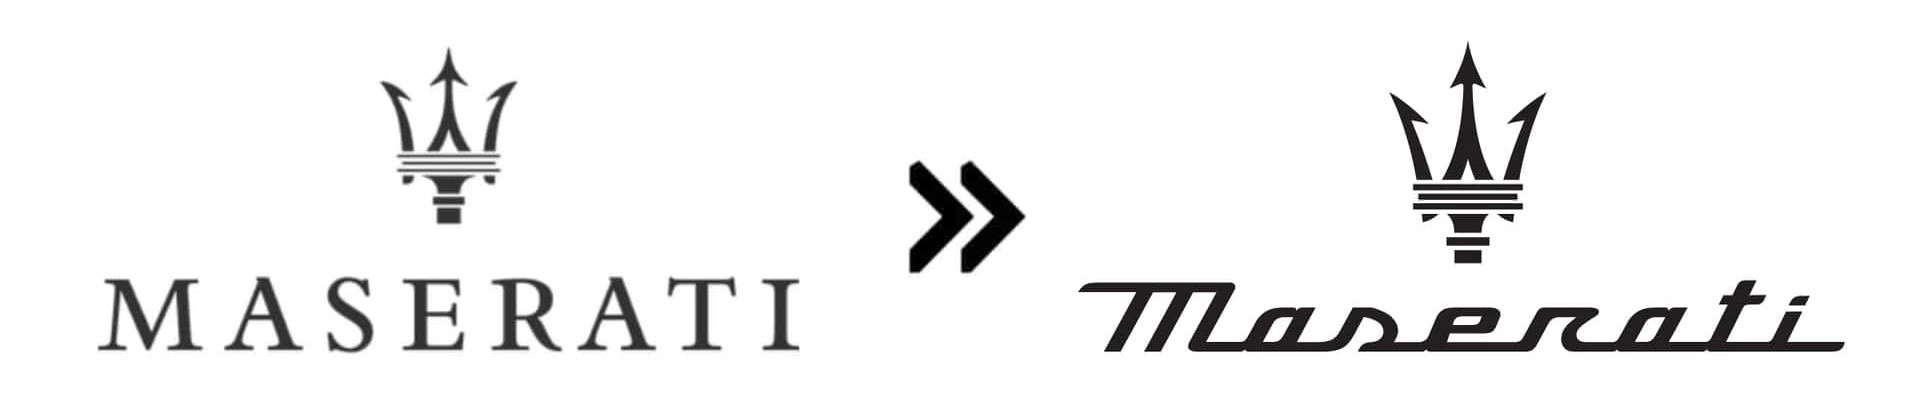 Maserati (2020): Maserati đã đơn giản hóa logo một lần vào năm 2015 và tới 2020 lại làm... ngược lại. Giao diện phông chữ mới trong logo nhìn phức tạp hơn đáng kể, biểu tượng đinh ba phía trên cũng được làm chi tiết hơn - Ảnh: Motor1